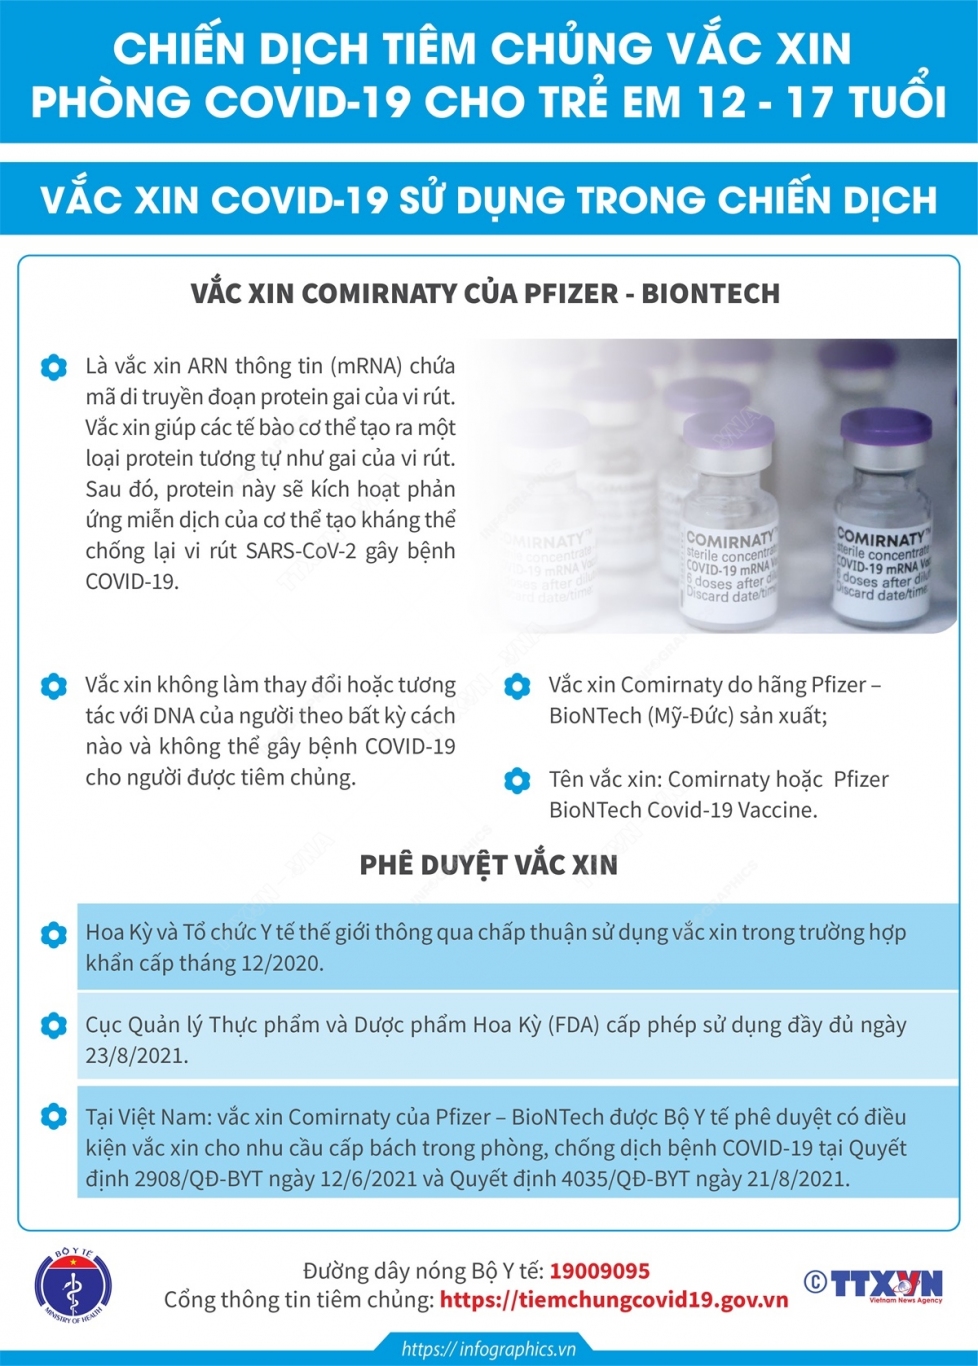 2021 11 3 vn tiem vaccine cho tre 12 17 tuoi vn ngoc copy 3